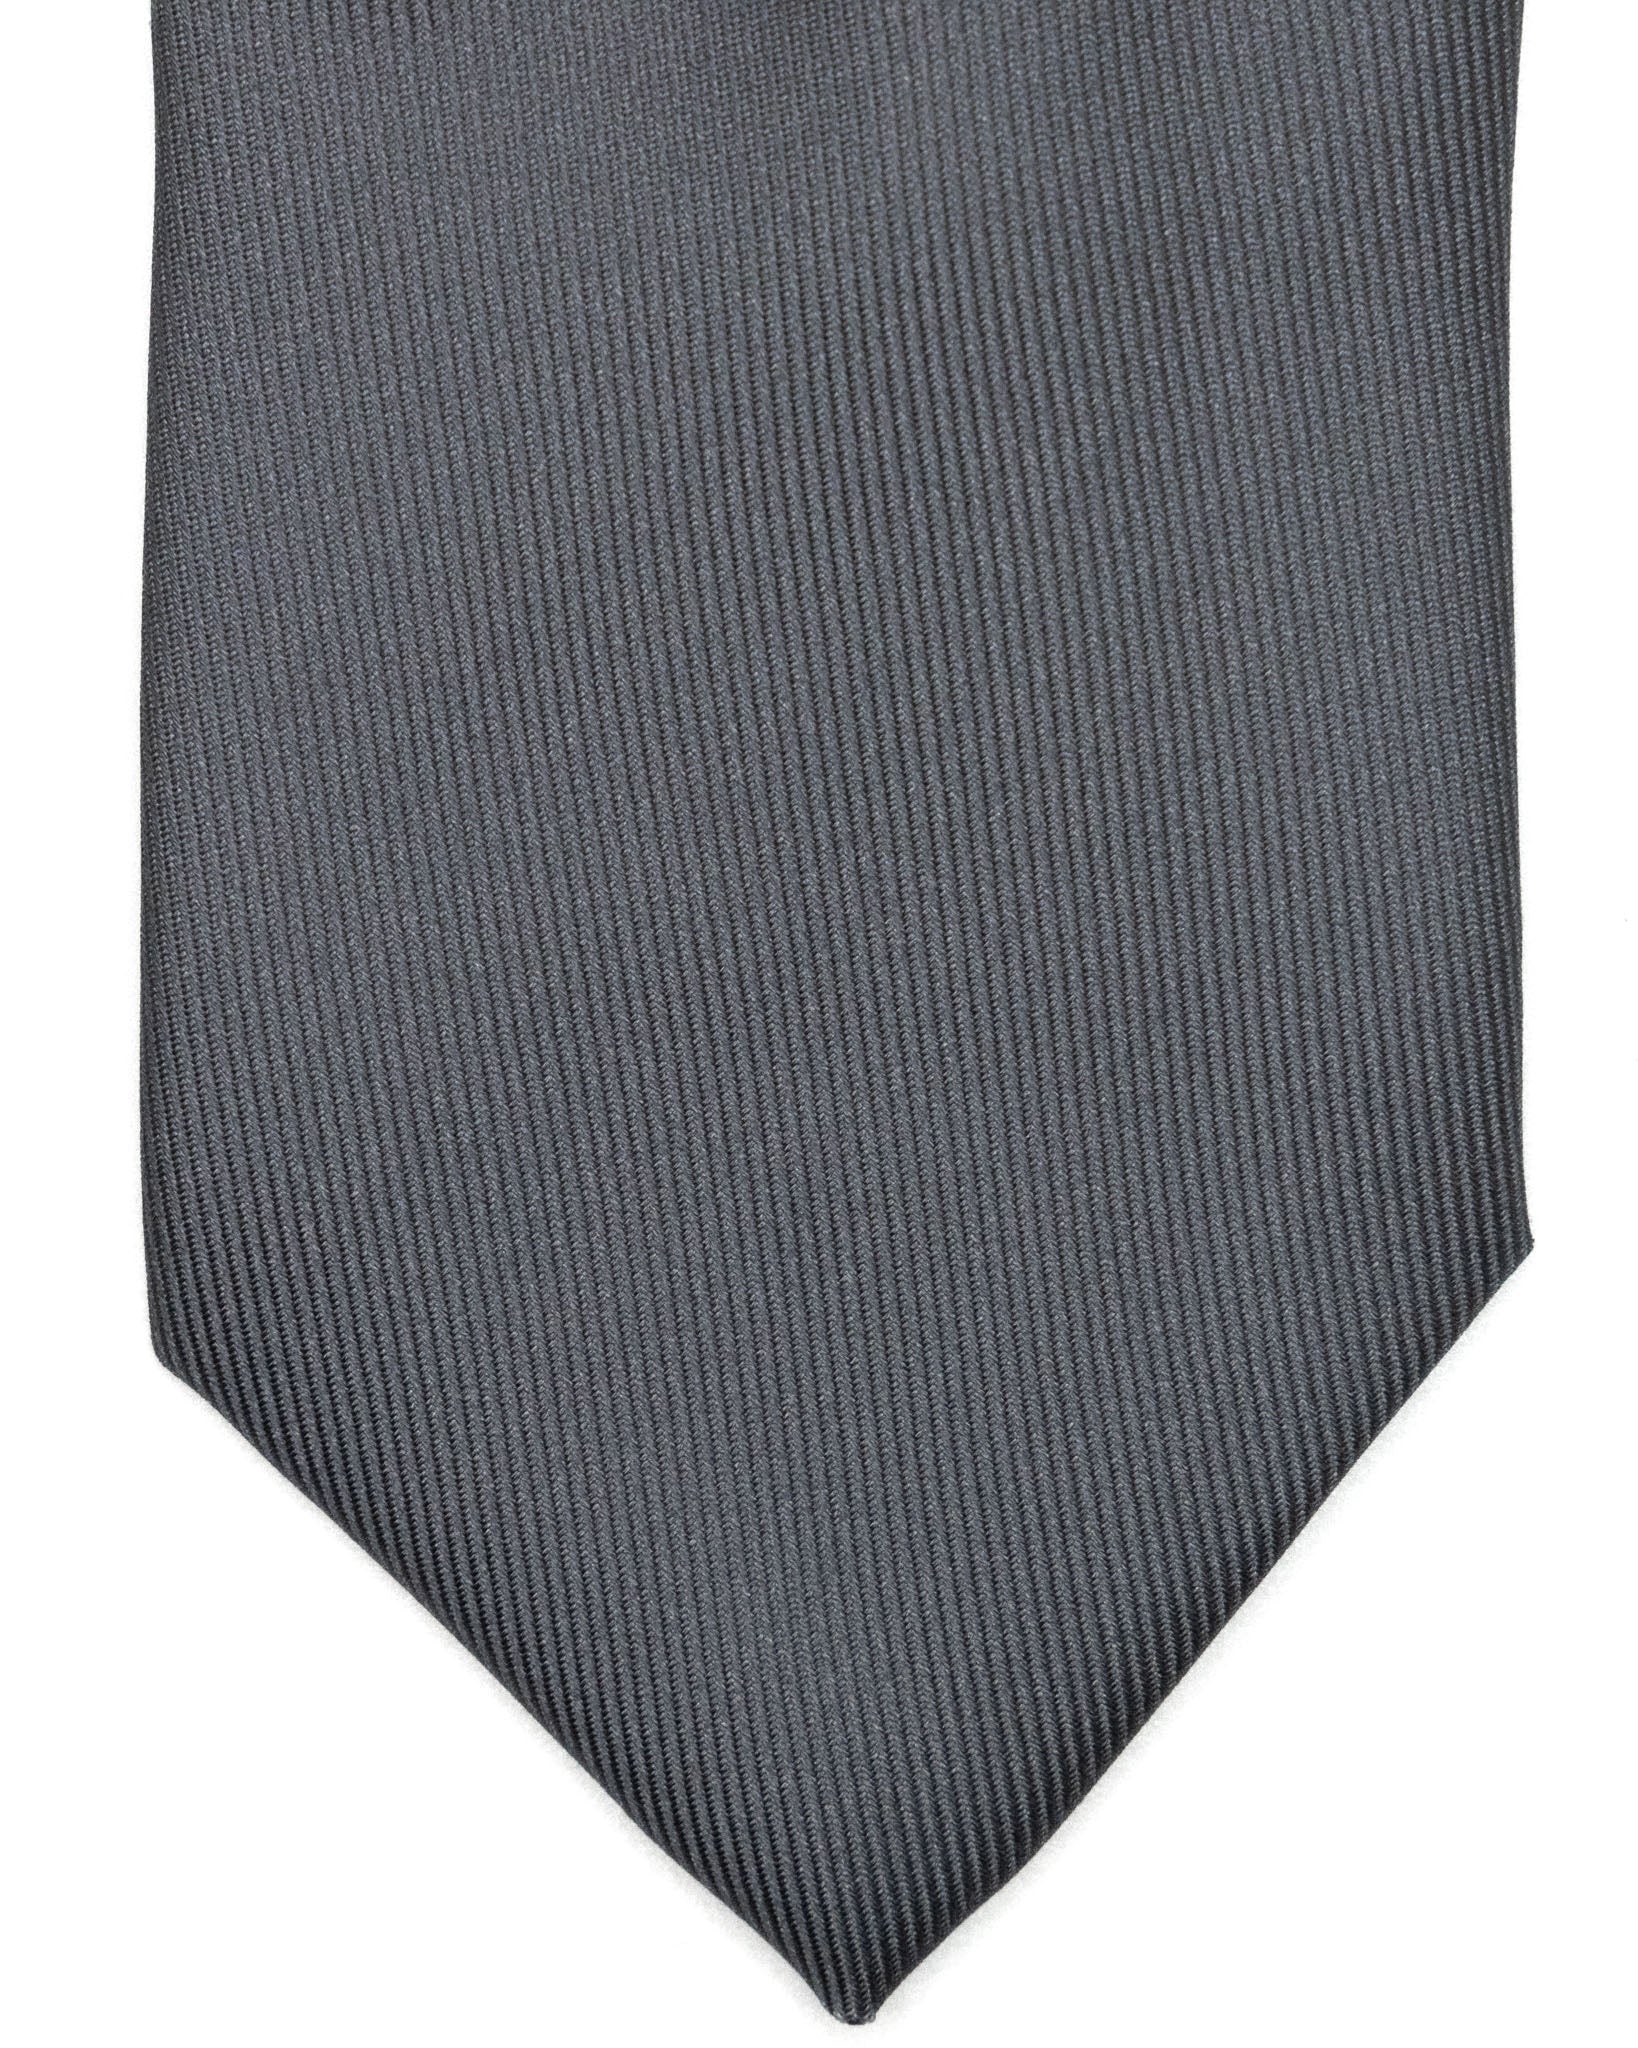 Cravatta - in seta twill antracite